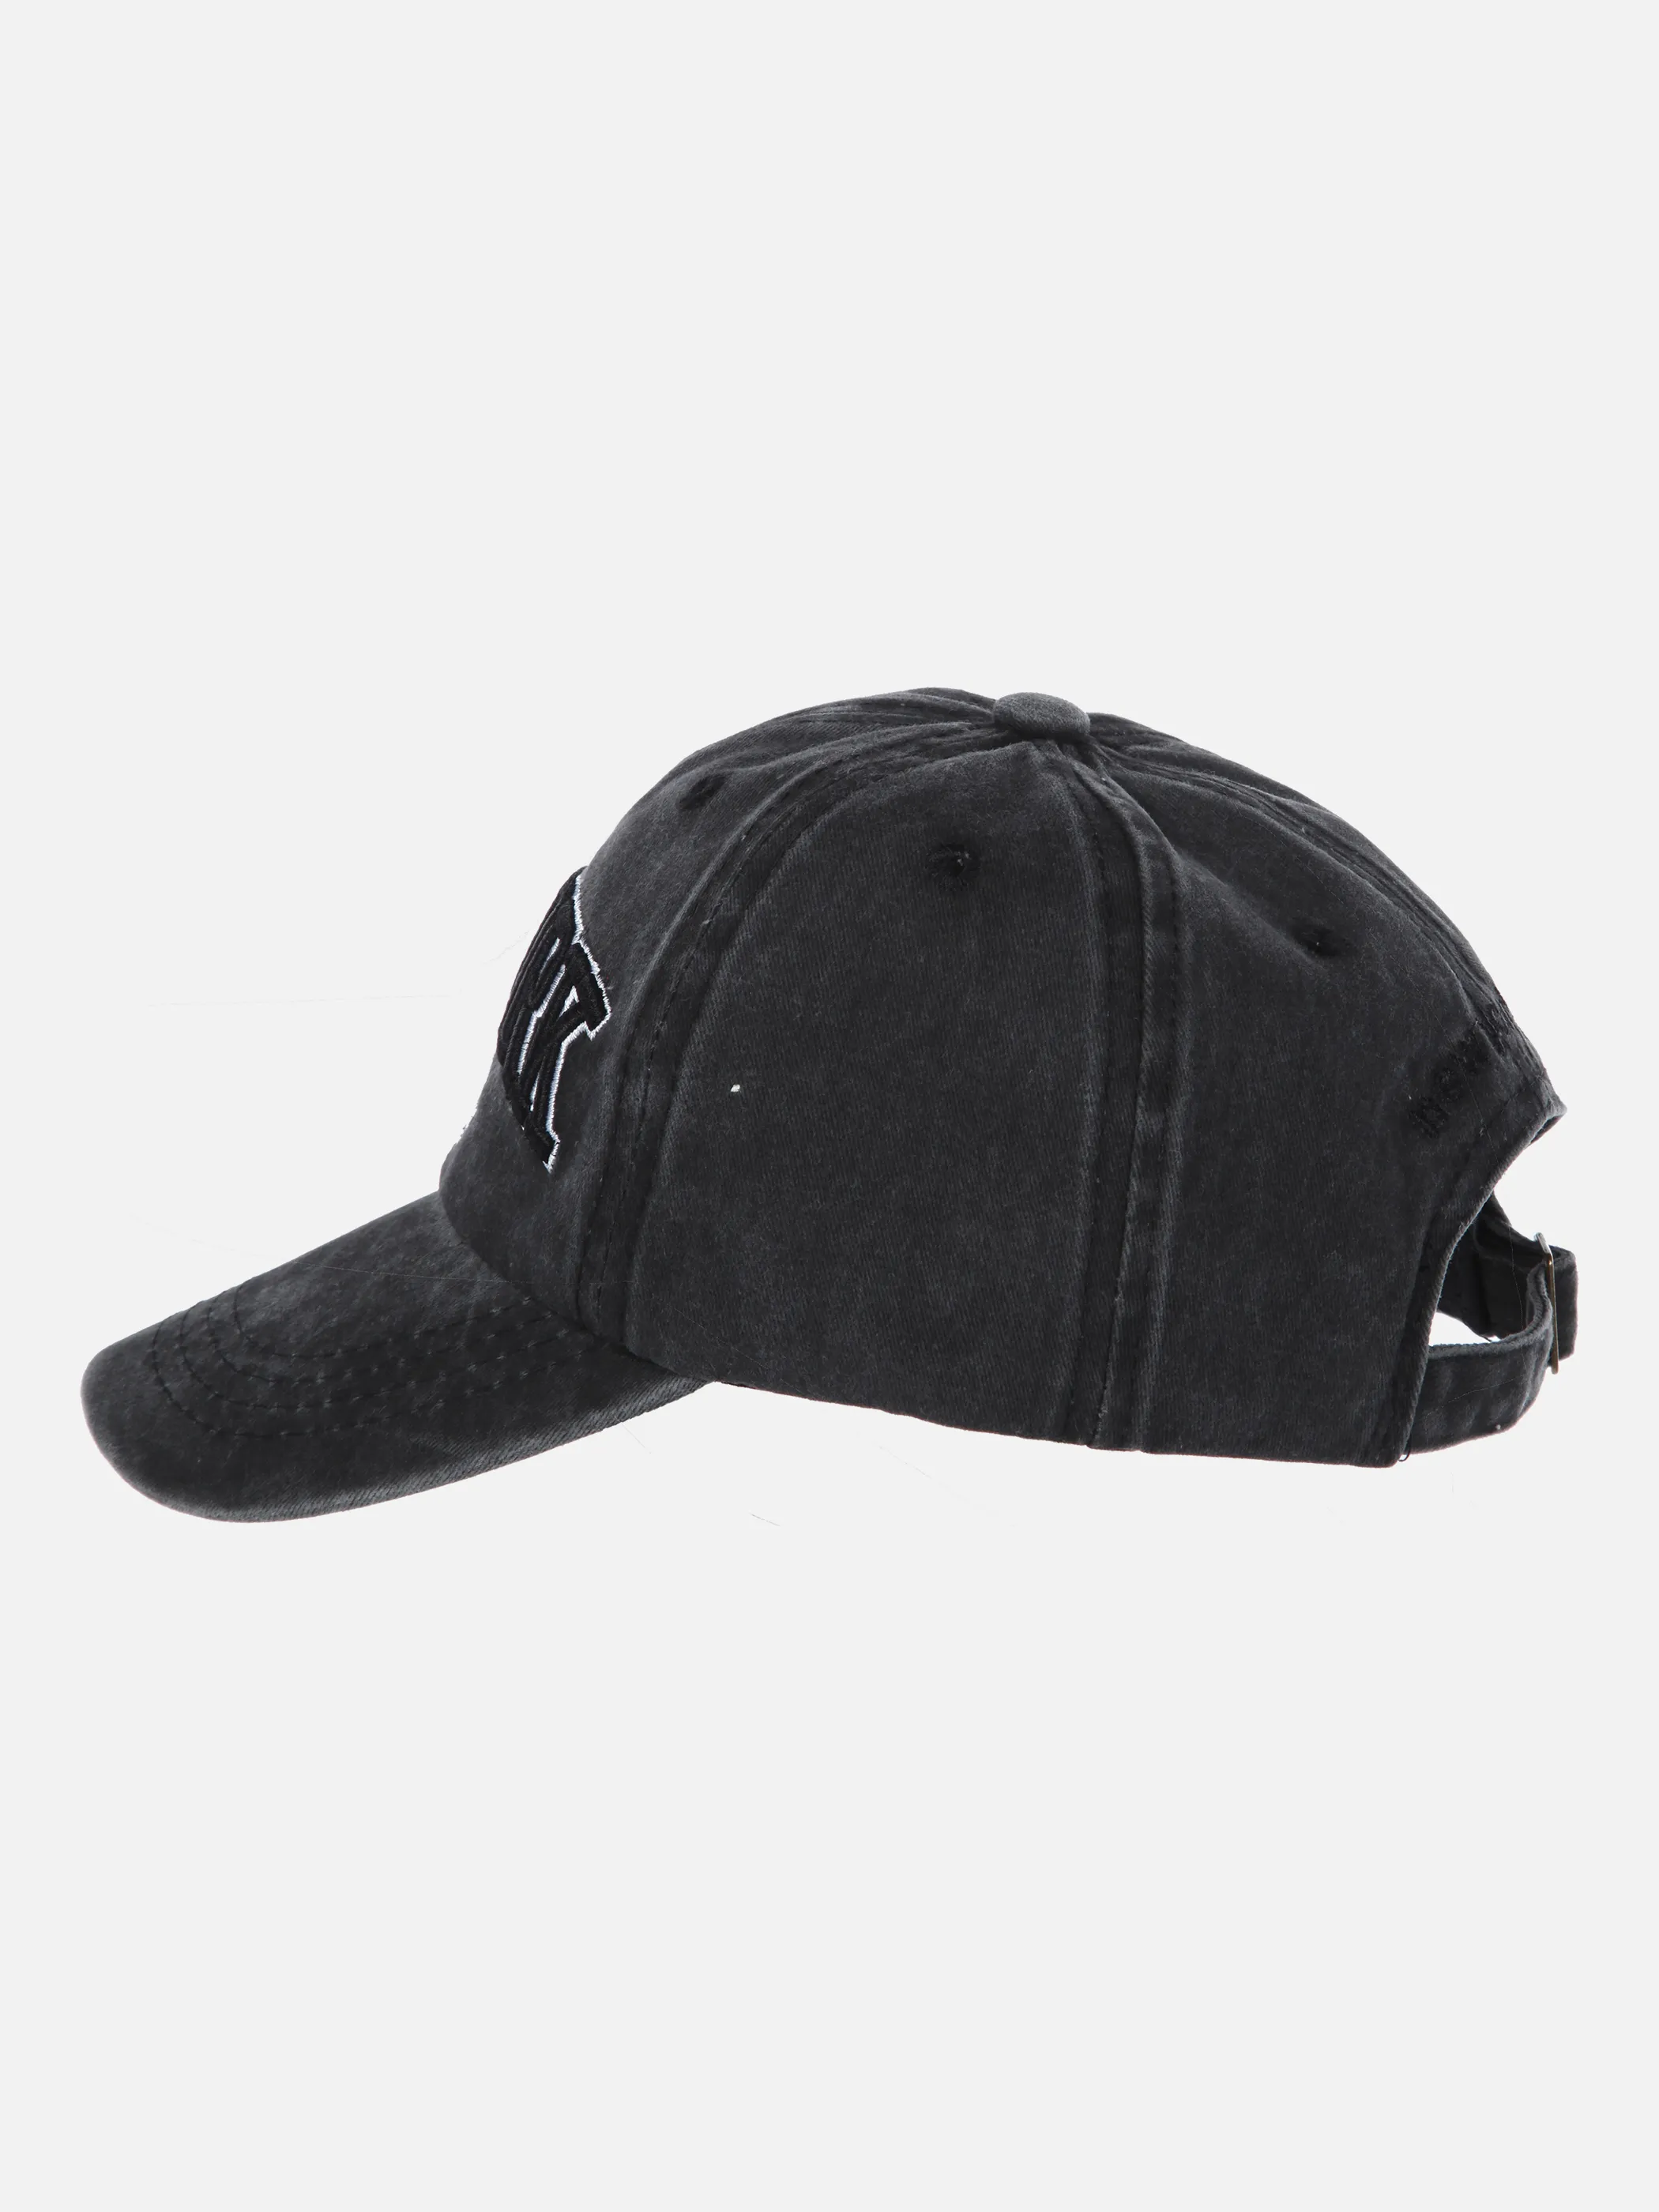 Stop + Go TB Baseball Cap in schwarz mit Schwarz 851126 SCHWARZ